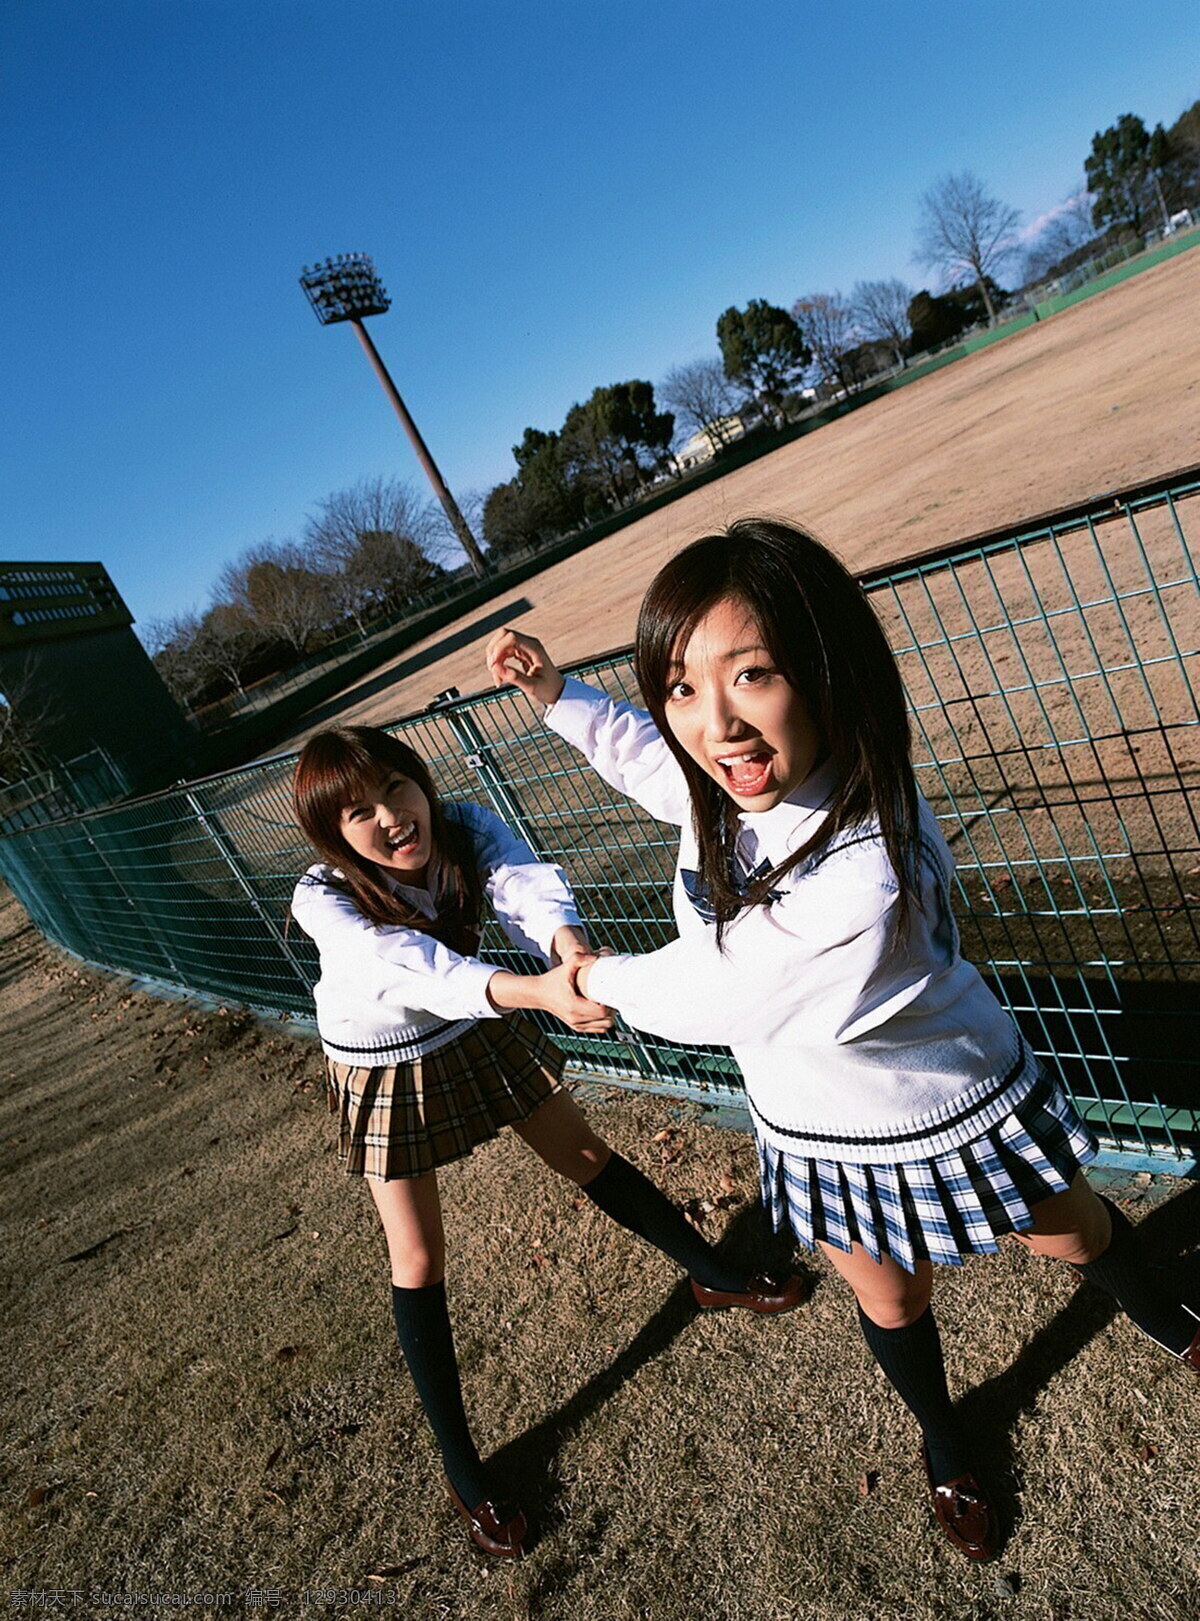 日本学生 清纯 女生 女学生 清纯女生 校服 中学生 友情 友谊 好友 朋友 学生时代 初中生 高中生 美女图片 人物图片